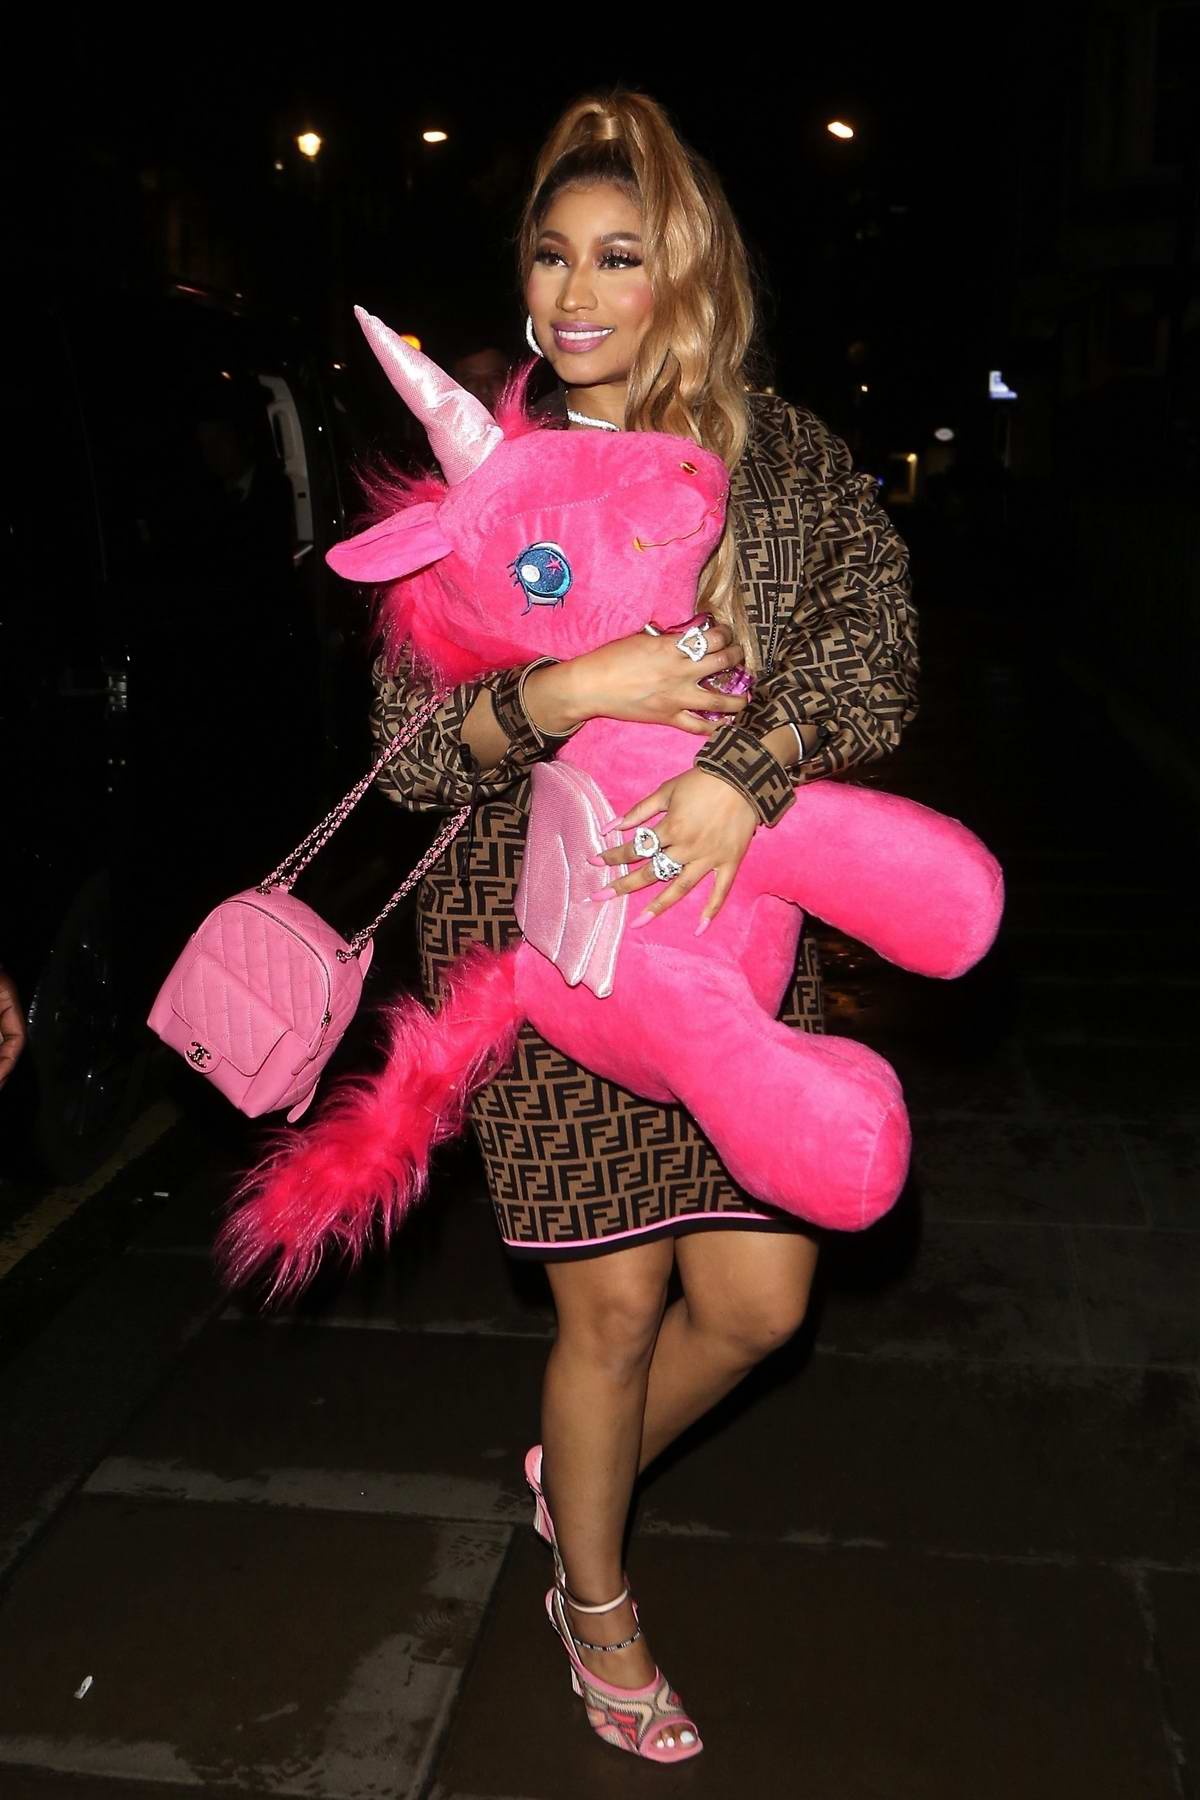 Nicki Minaj rocks a Fendi dress and a pink unicorn as she leaves Opium  nightclub in